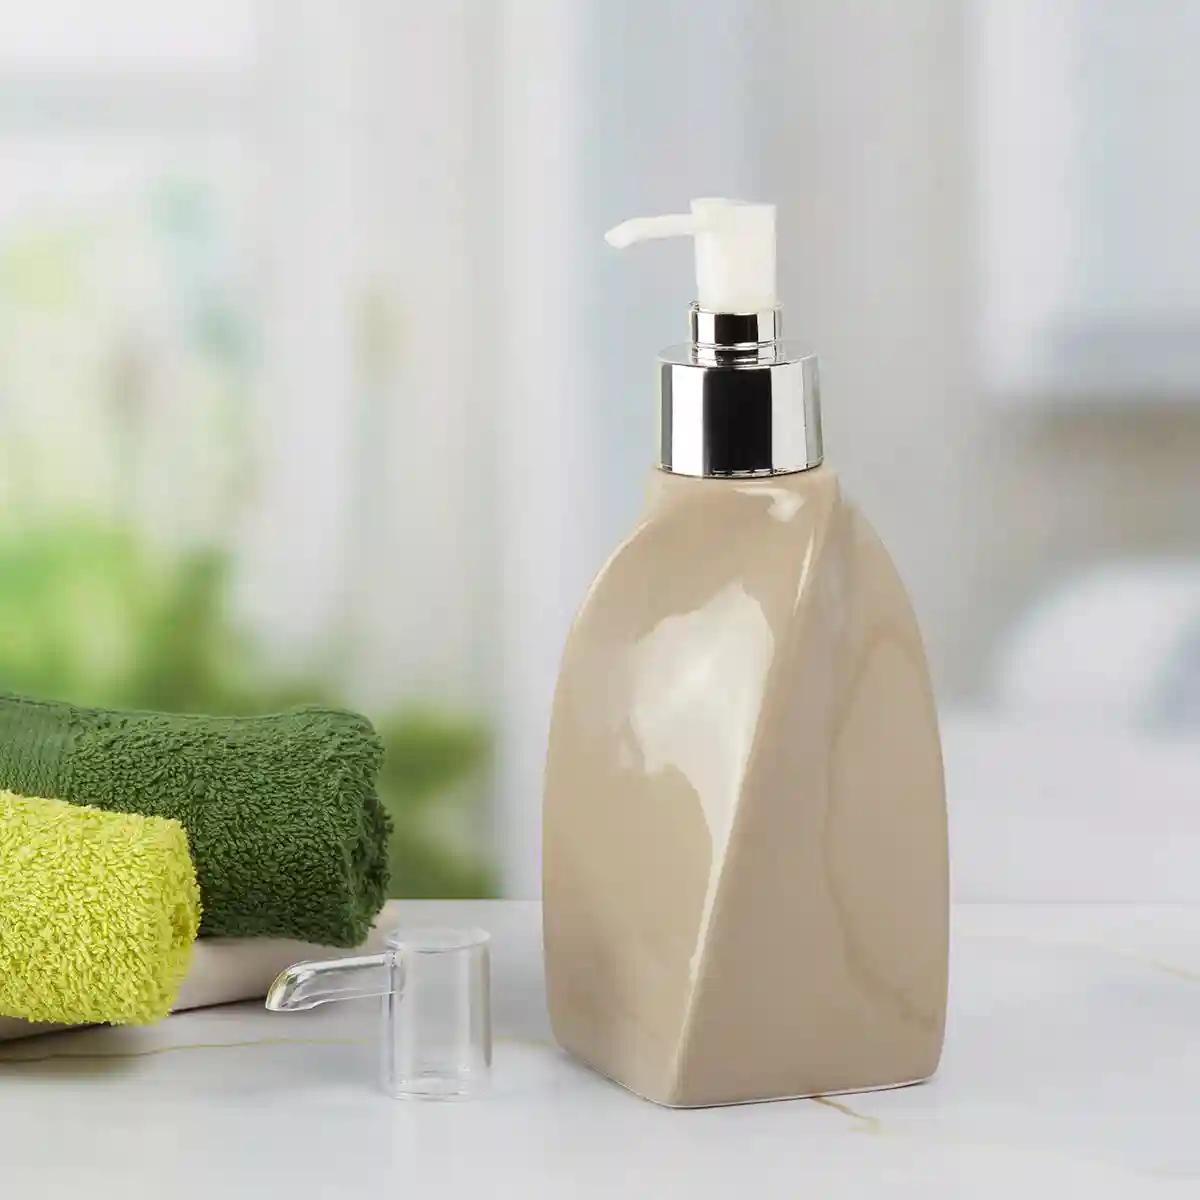 Kookee Ceramic Soap Dispenser for Bathroom handwash, refillable pump bottle for Kitchen hand wash basin, Set of 2 - Beige (9658)